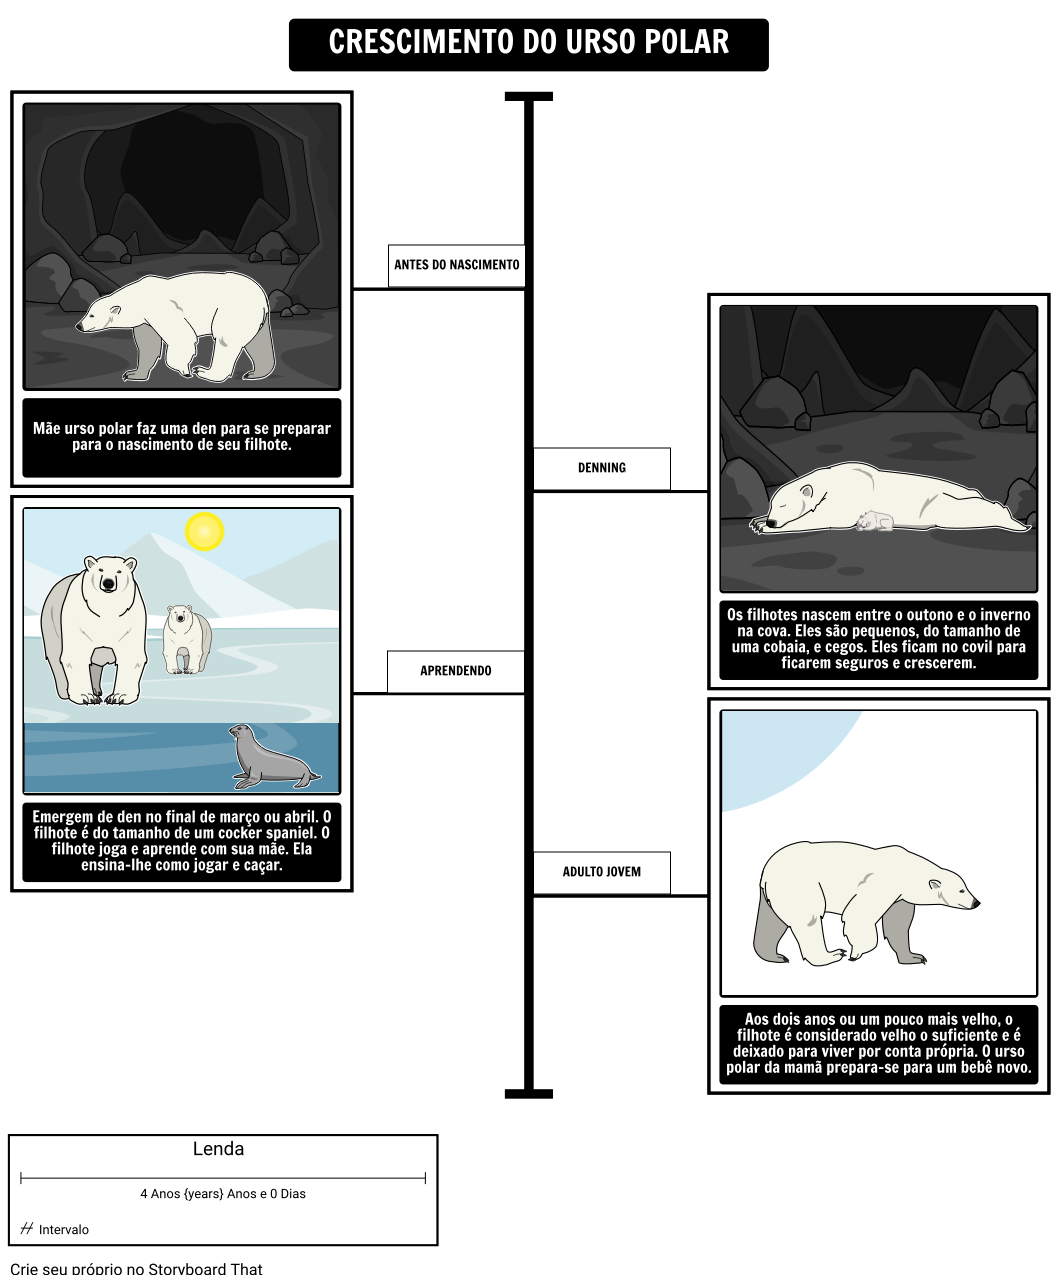 Onde Vivem os Ursos Polares? Crescimento do Urso Polar